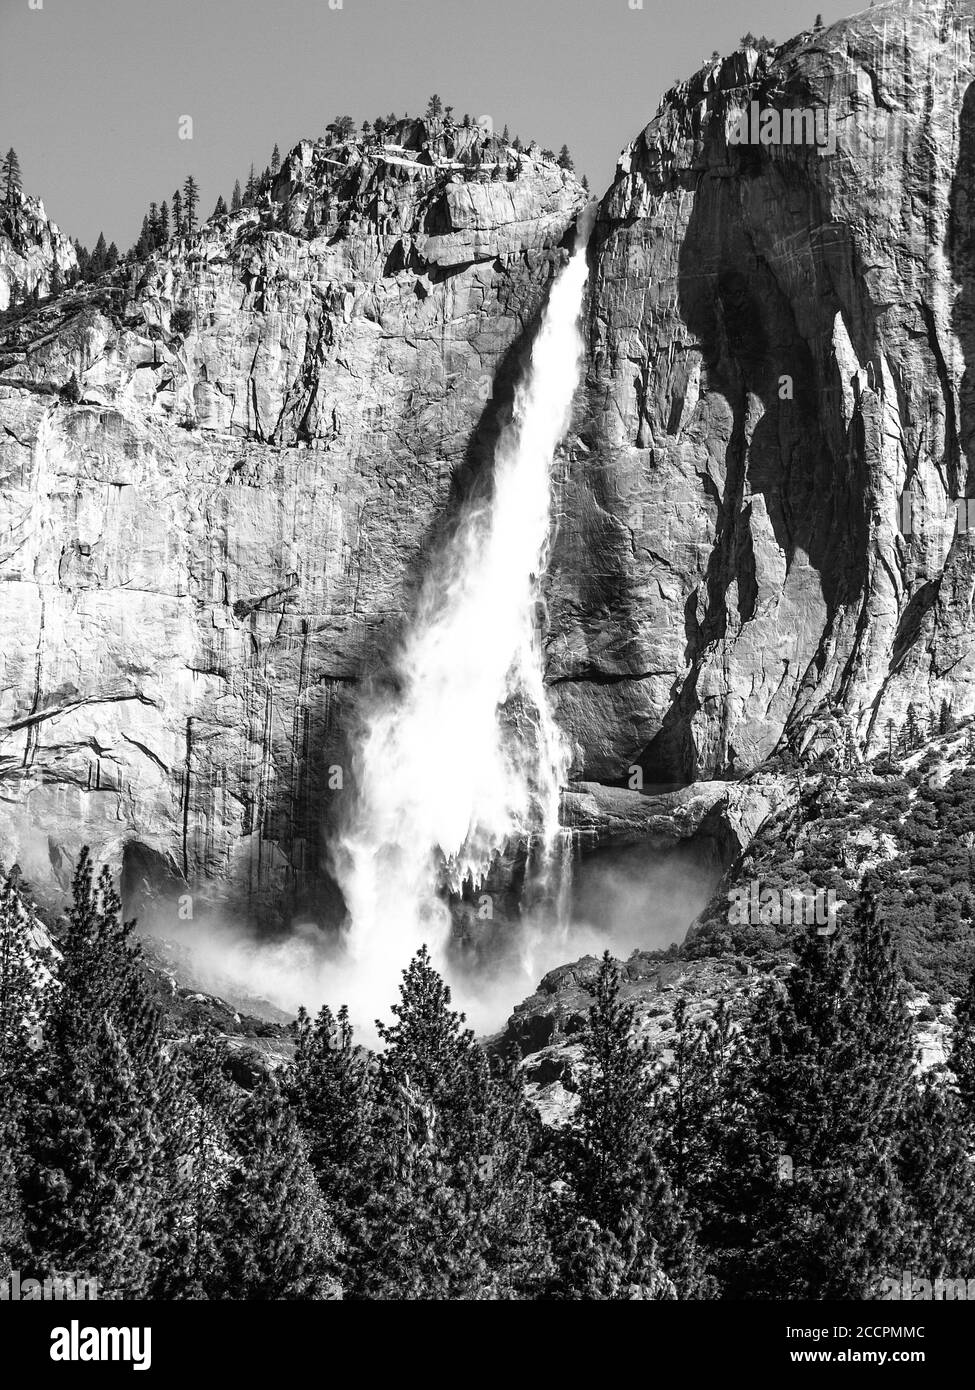 Upper Yosemite Fall, der höchste Wasserfall im Yosemite National Park, Kalifornien, USA. Schwarzweiß-Bild. Stockfoto